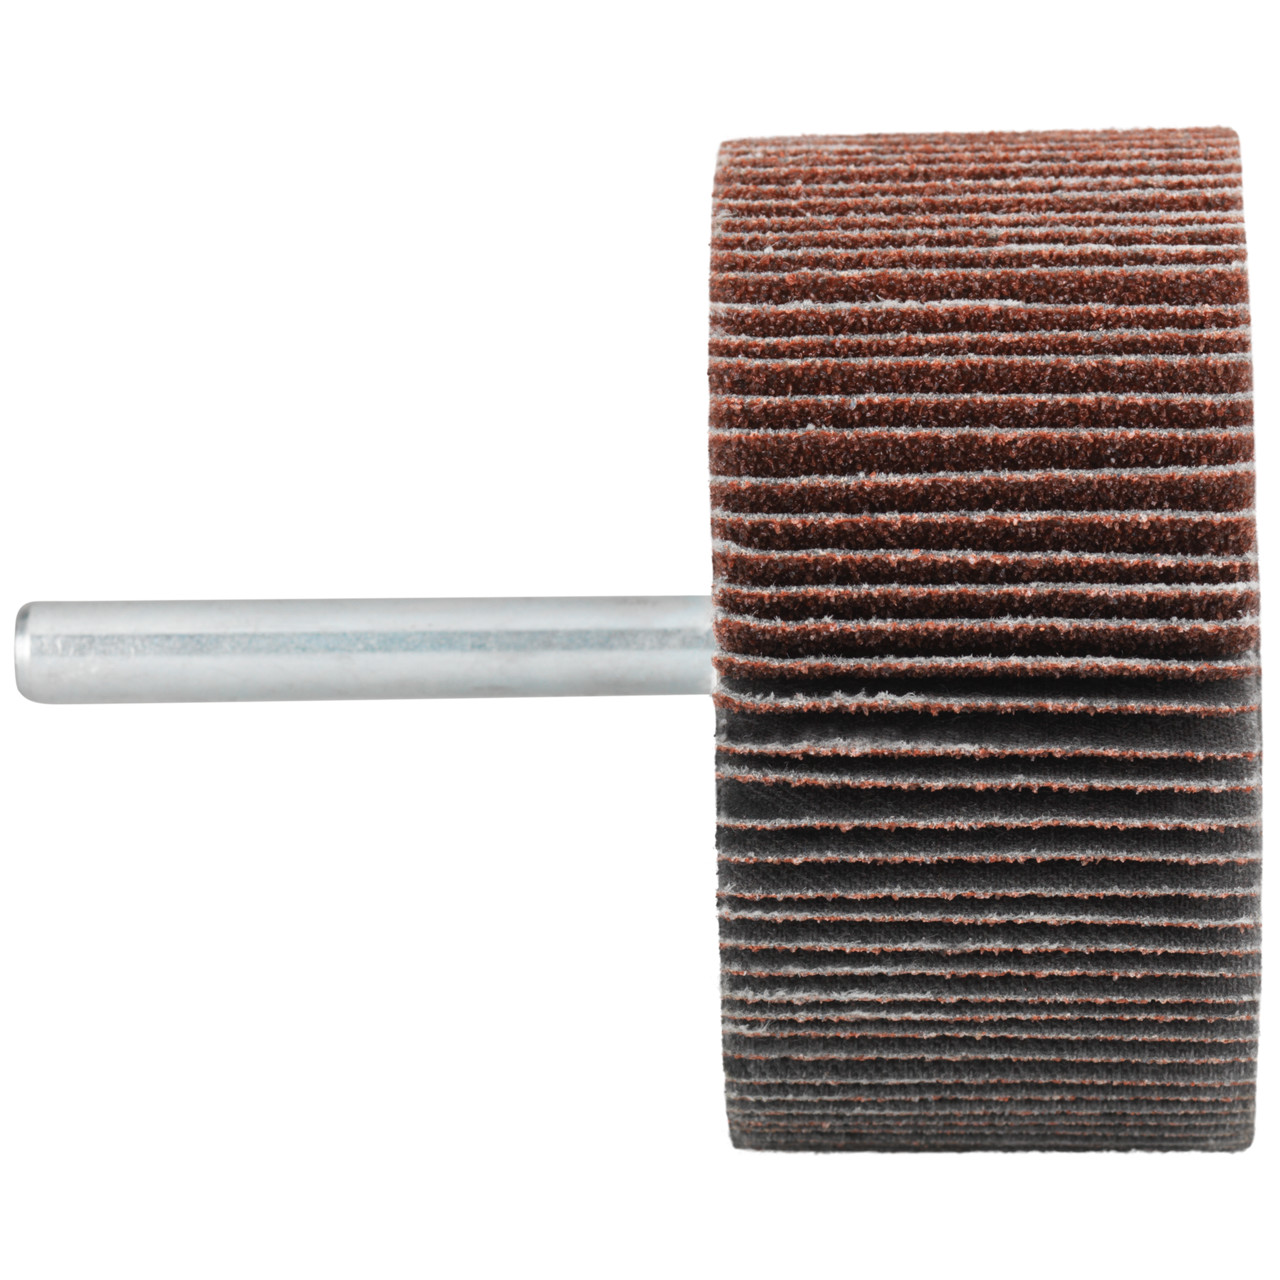 Tyrolit A-P01 C X Pennen DxD 80x30 Voor staal, roestvast staal en non-ferrometalen, P120, vorm: 52LA, Art. 816983